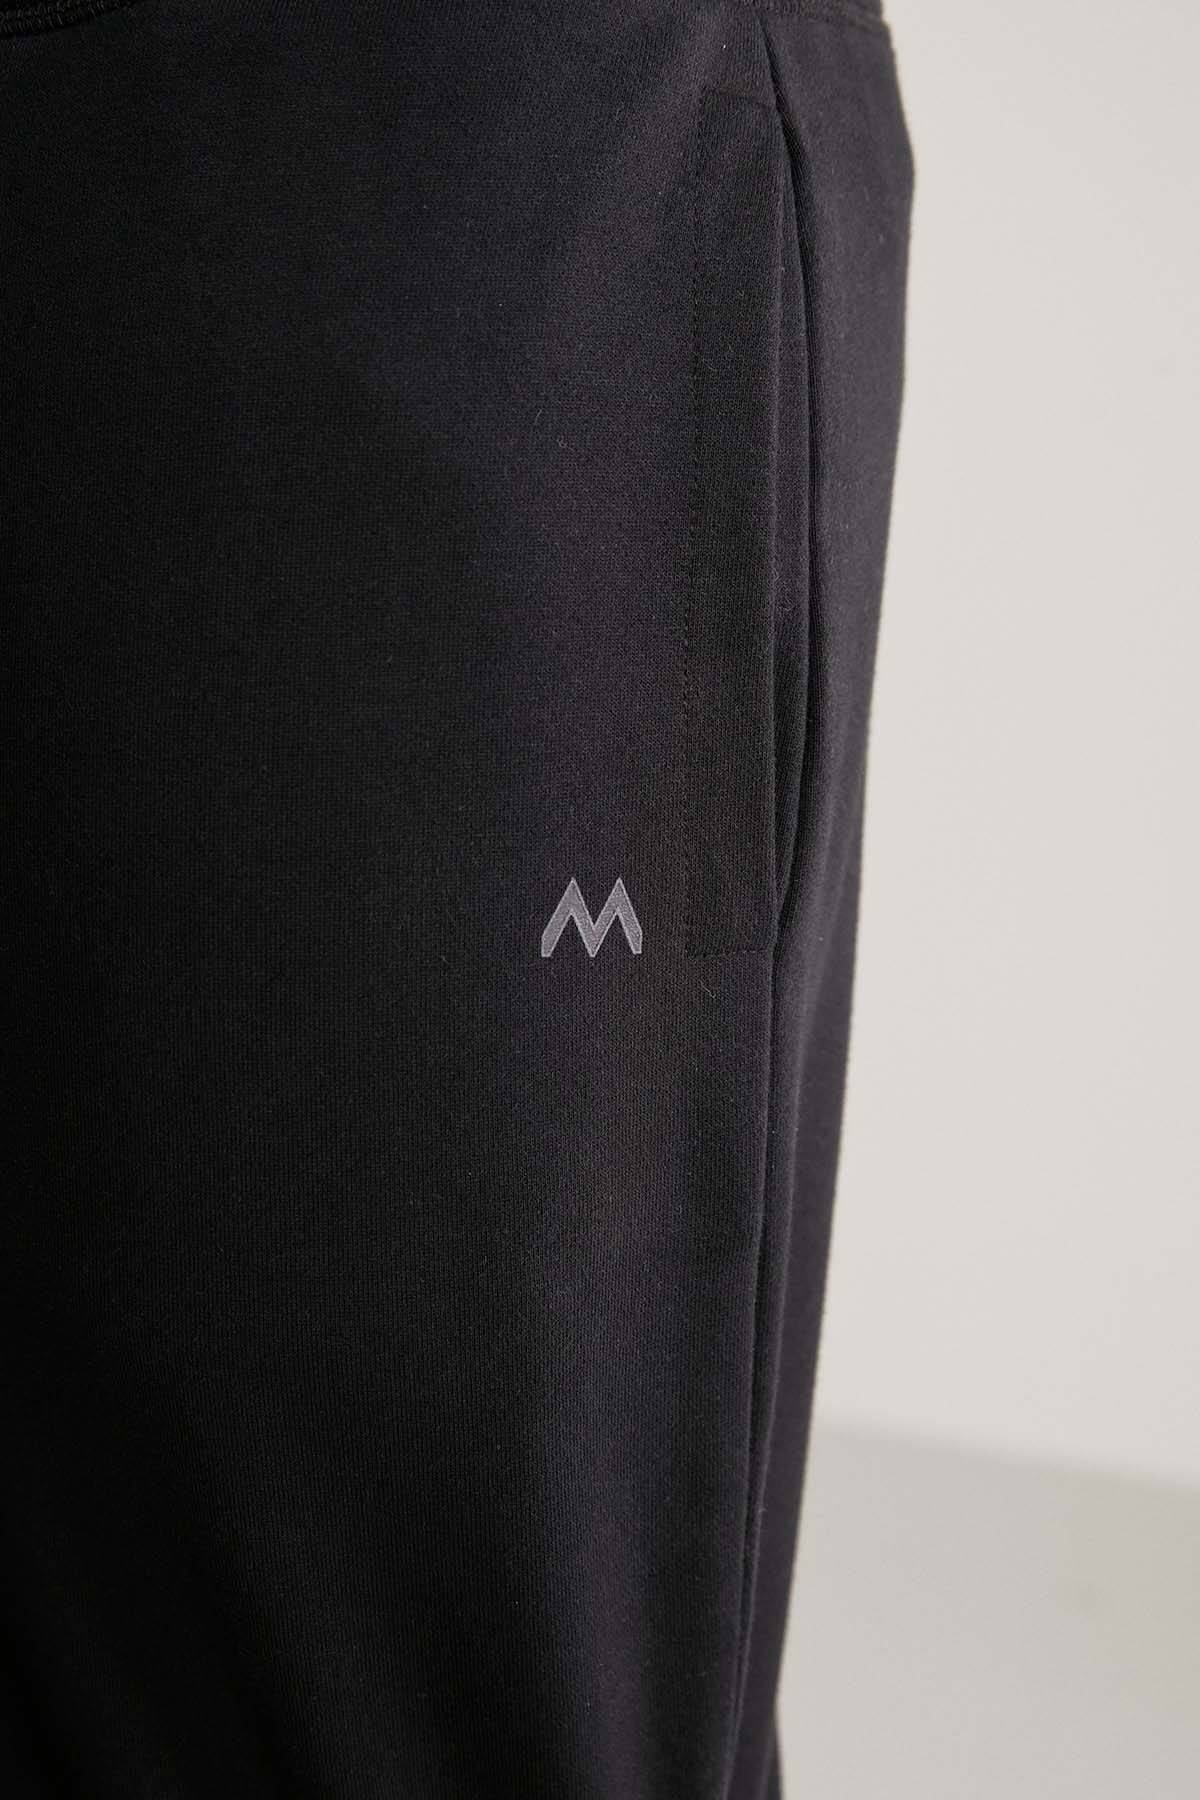 M Logolu Siyah Jogger Pantolon